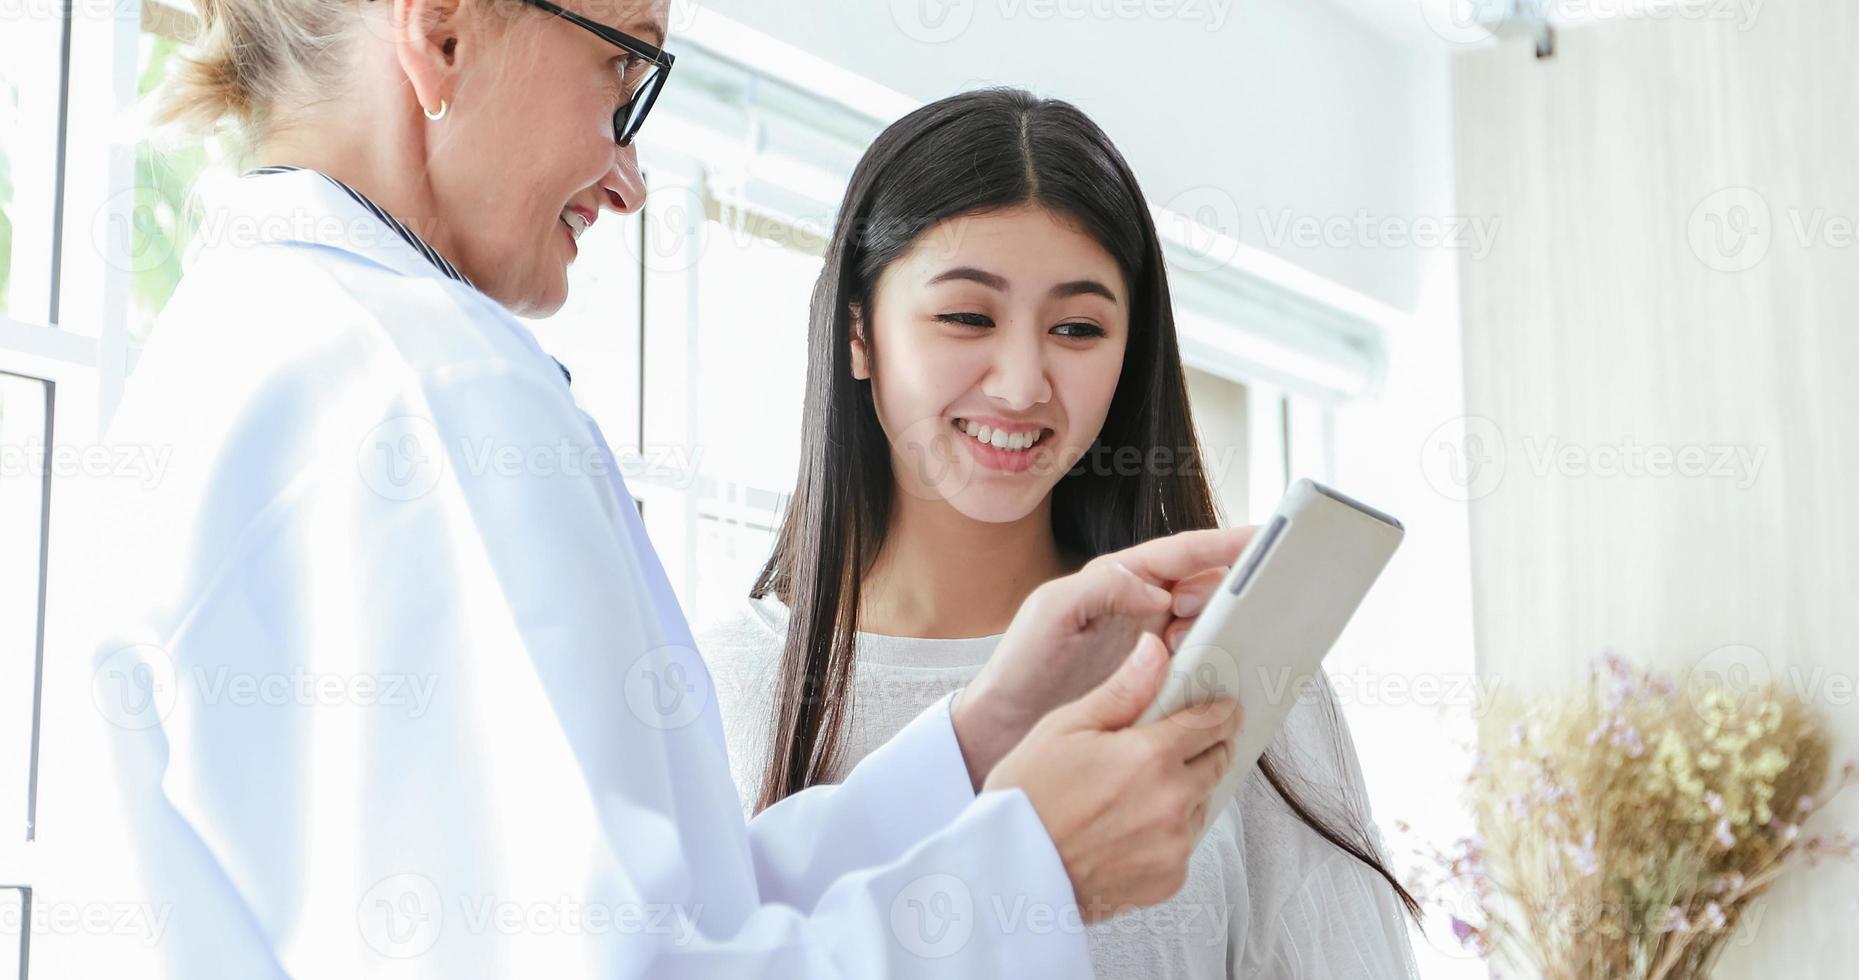 médico atendendo e explicando a medicação para uma paciente em seu consultório em hospitais foto